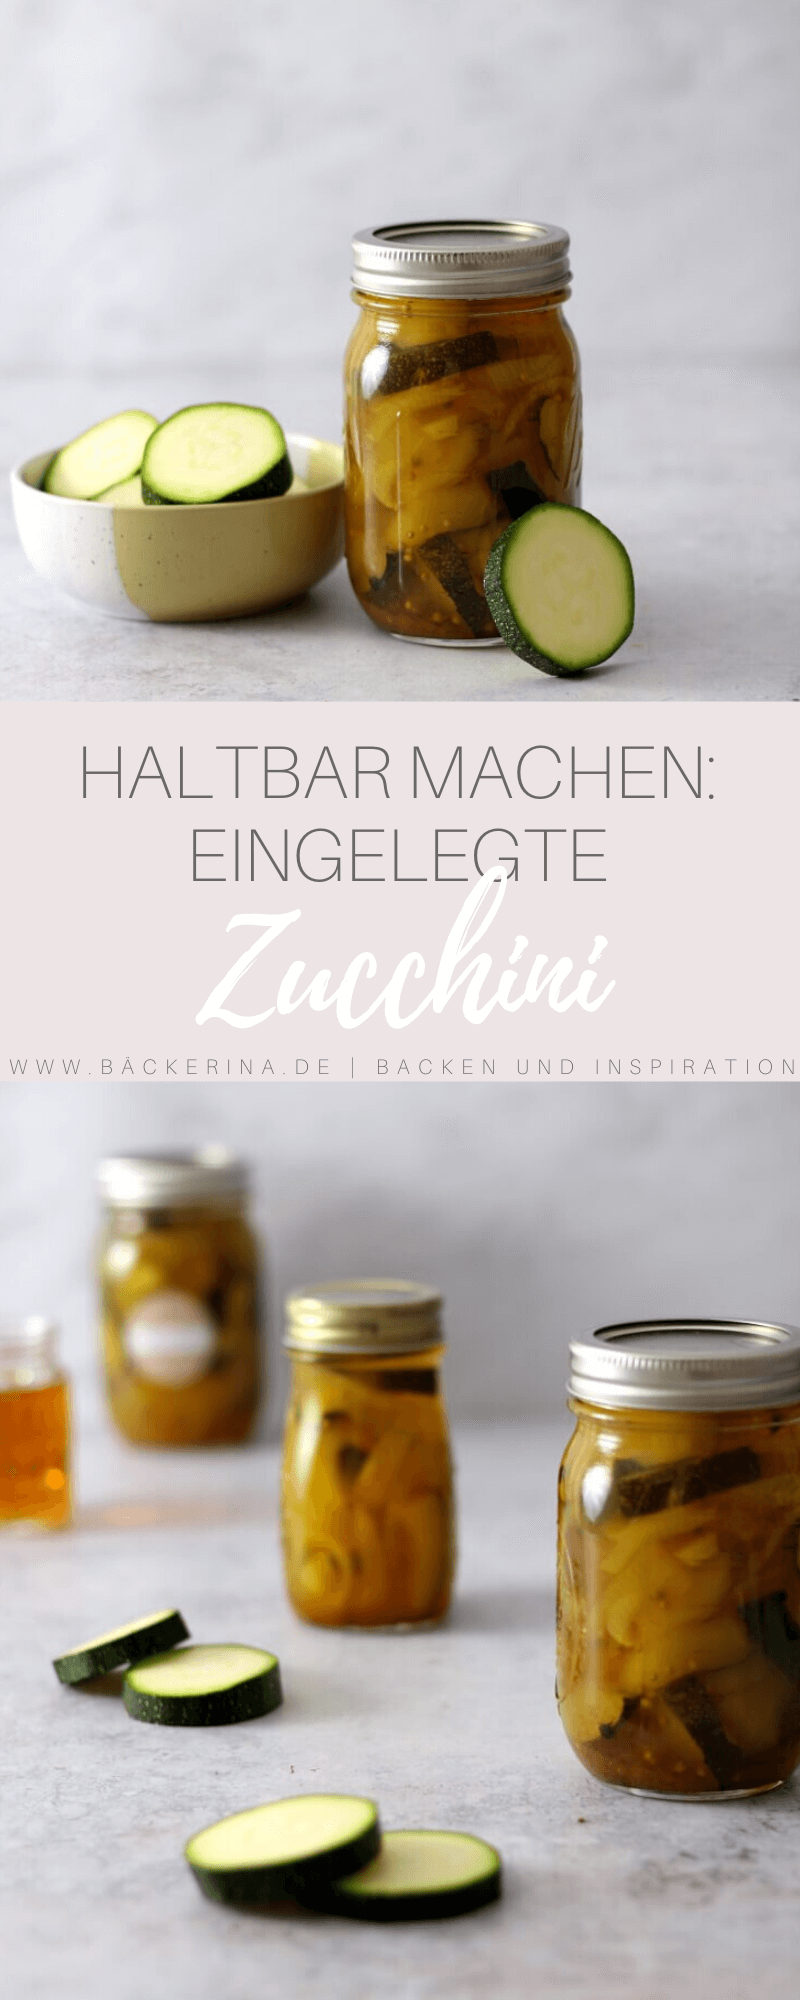 Eingelegte Zucchini | bäckerina.de